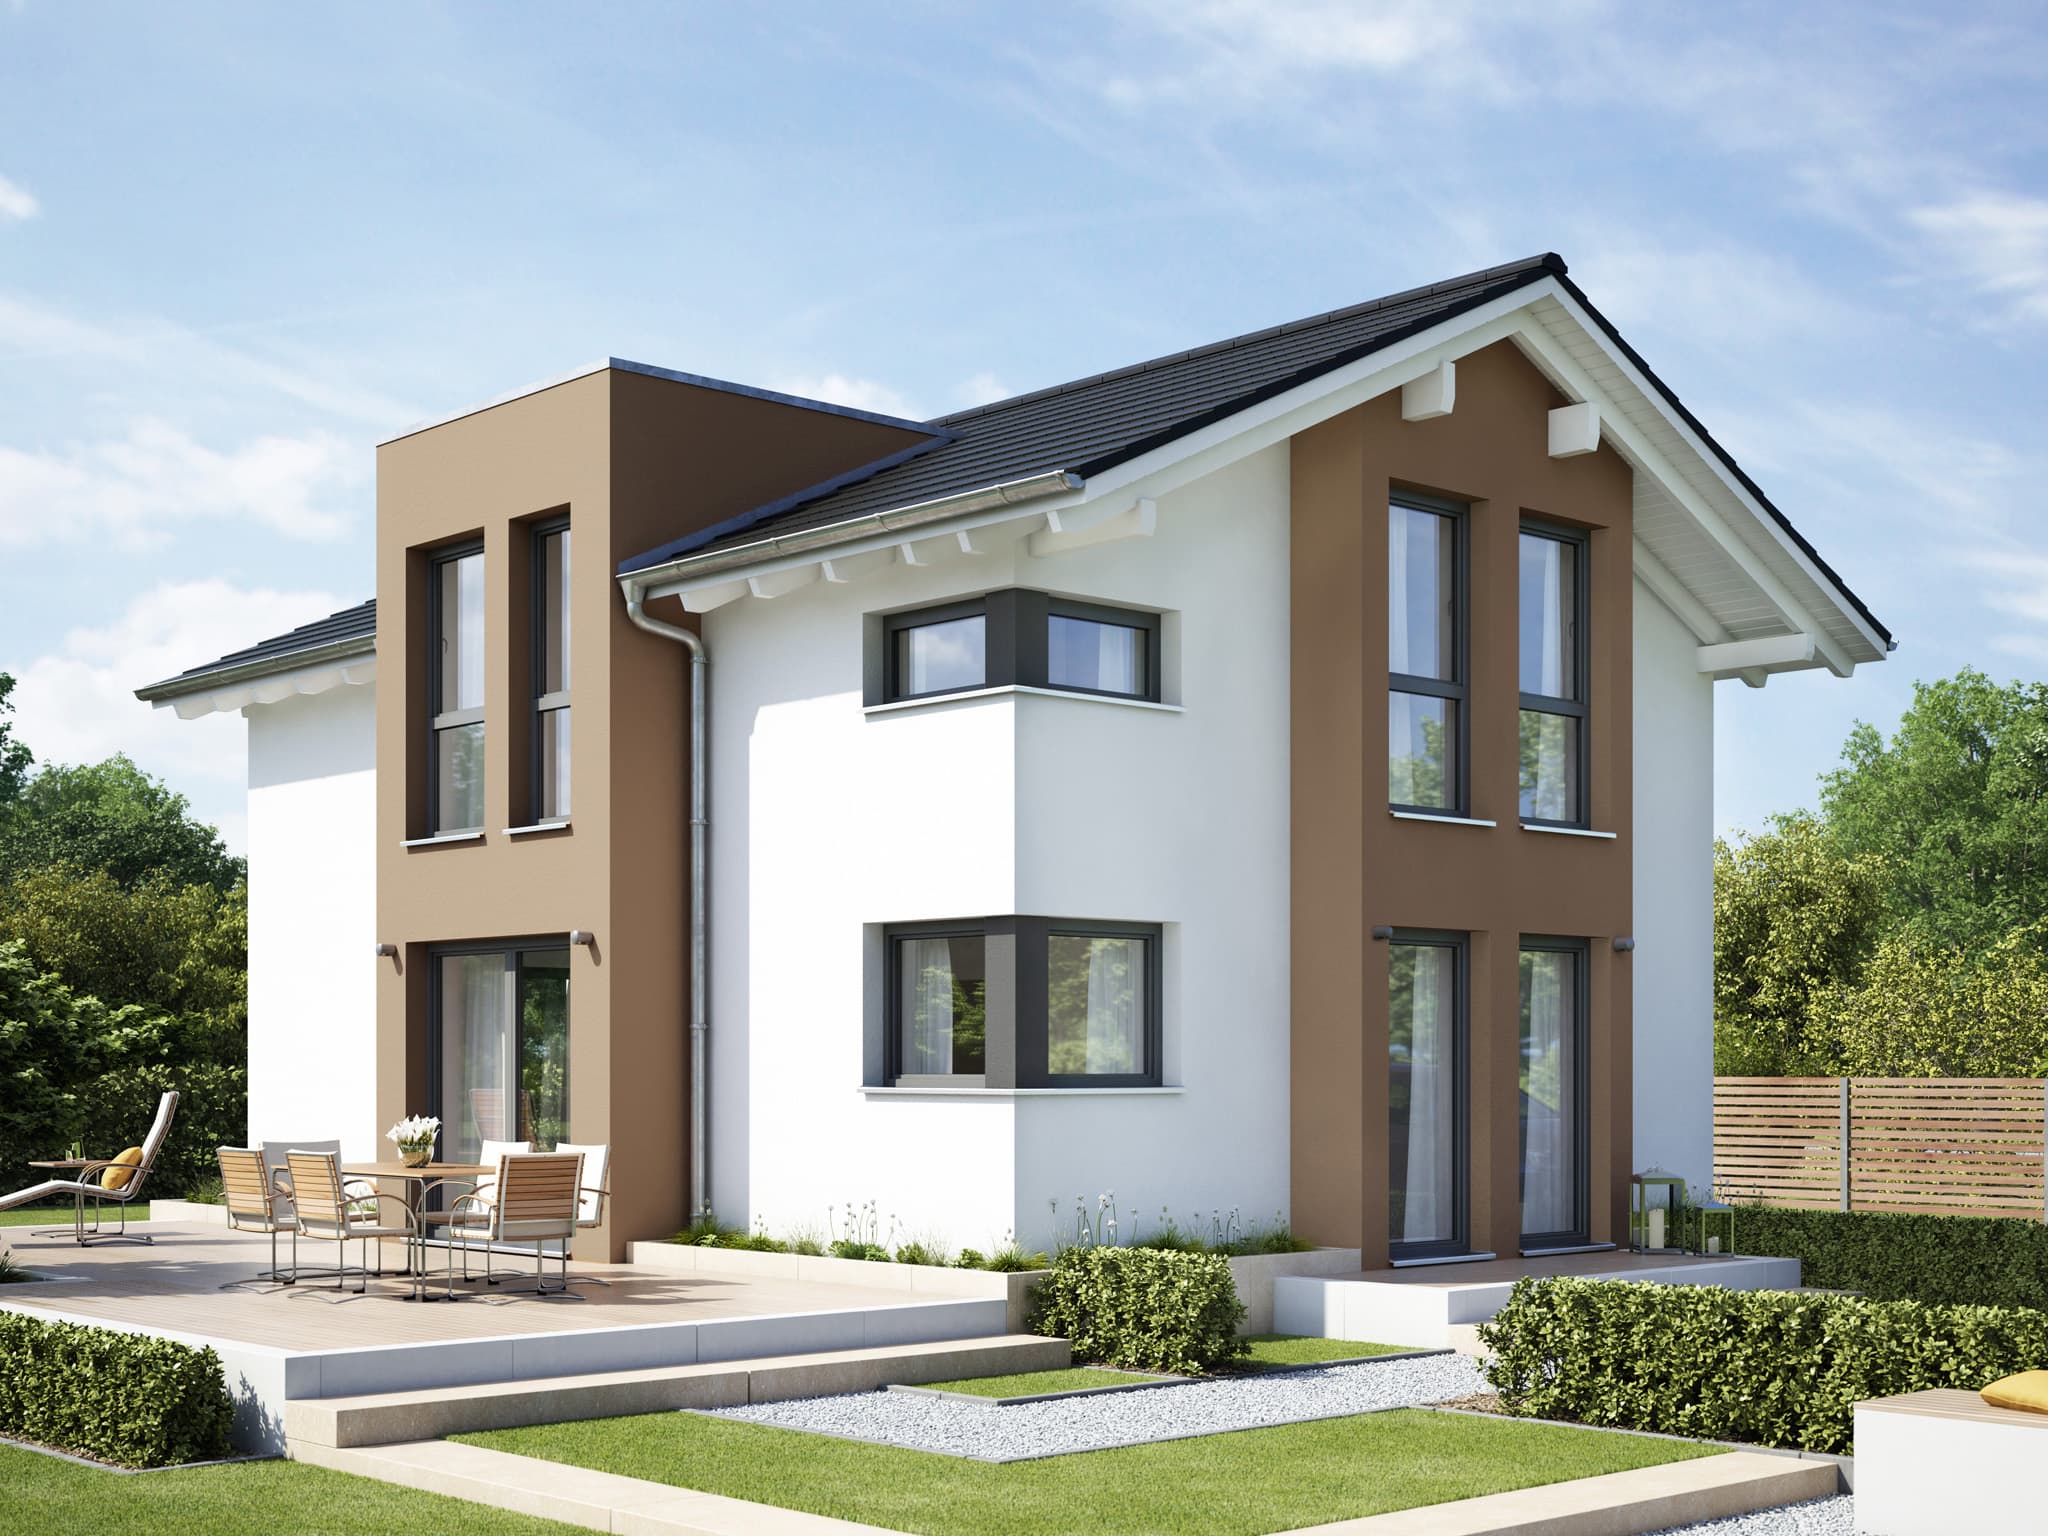 Modernes Satteldach Haus mit Flachdachgiebel & zweigeschossigem Erker - Einfamilienhaus bauen Ideen Fertighaus EVOLUTION 122 V6 von Bien Zenker - HausbauDirekt.de